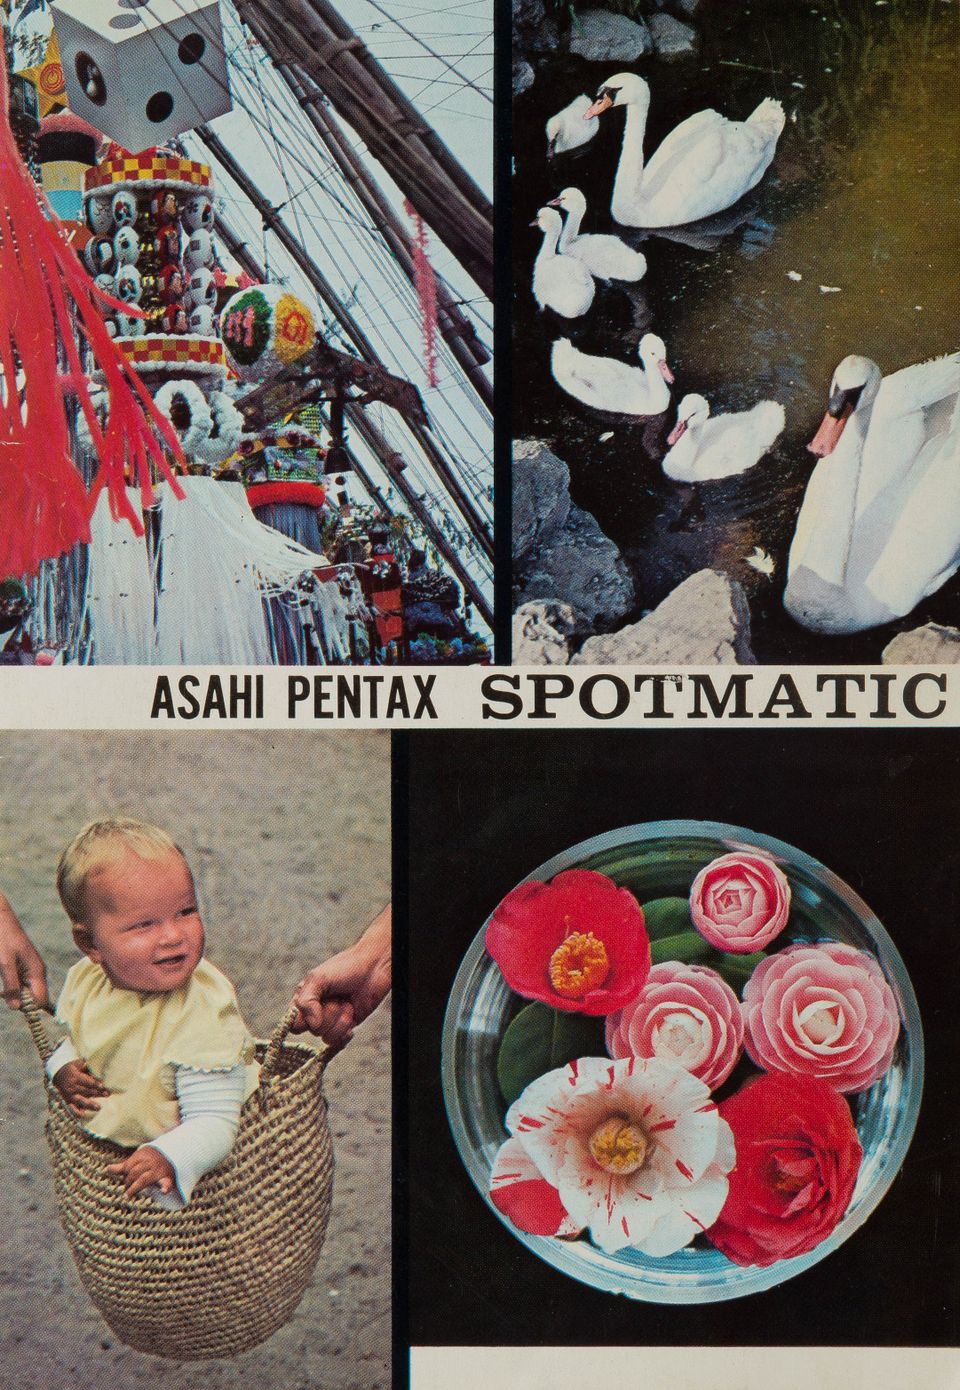 Asahi Pentax spotmatic